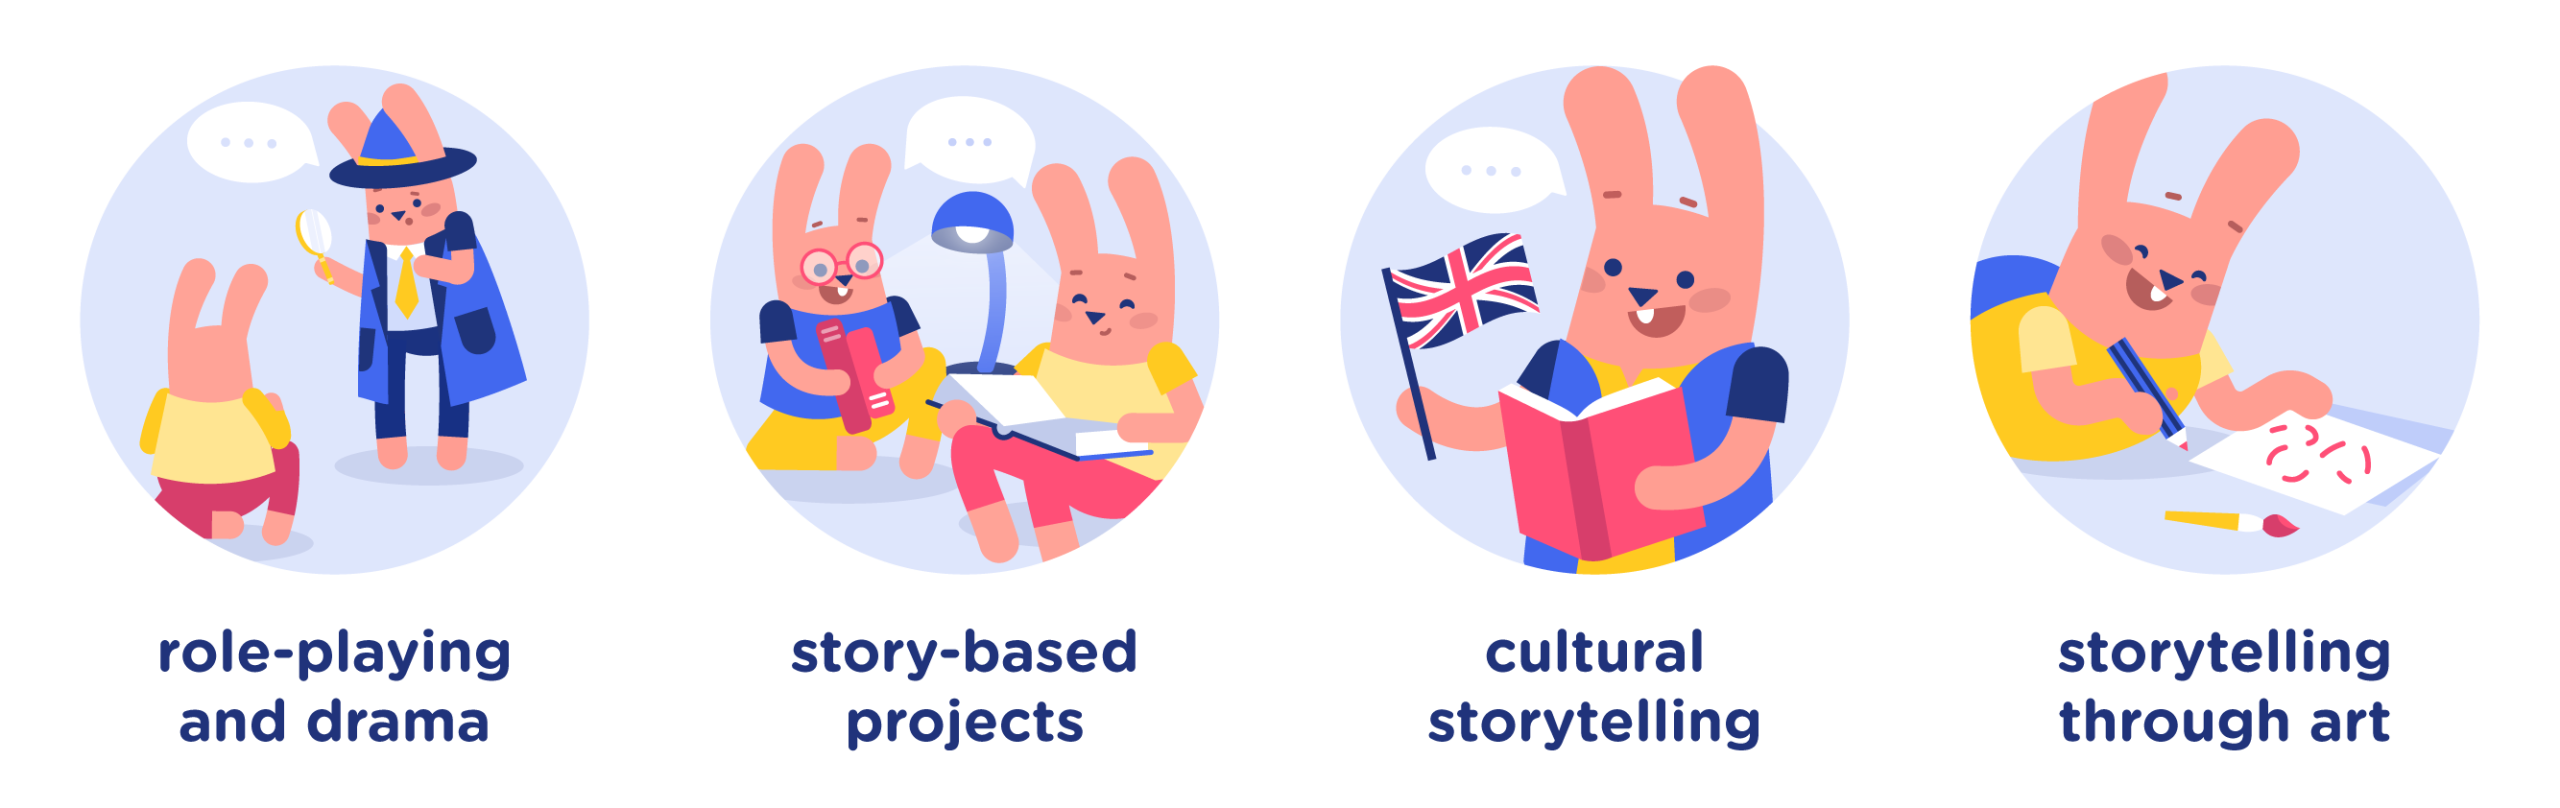 storytelling methodes types